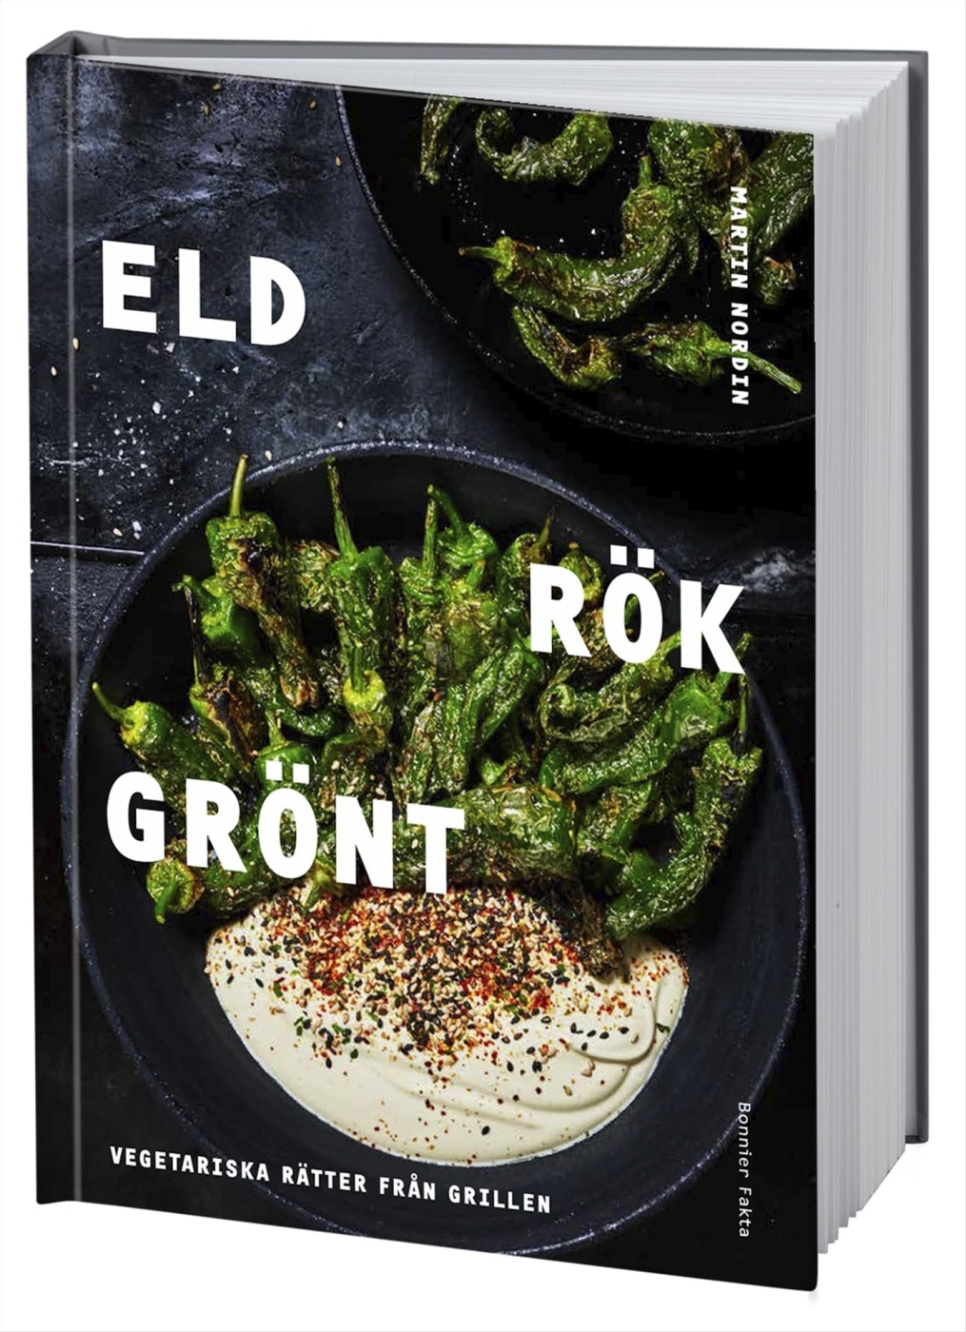 Eld Rök Grönt - Martin Nordin w grupie Gotowanie / Książki kucharskie / Grillowanie i wędzenie w The Kitchen Lab (1355-19950)